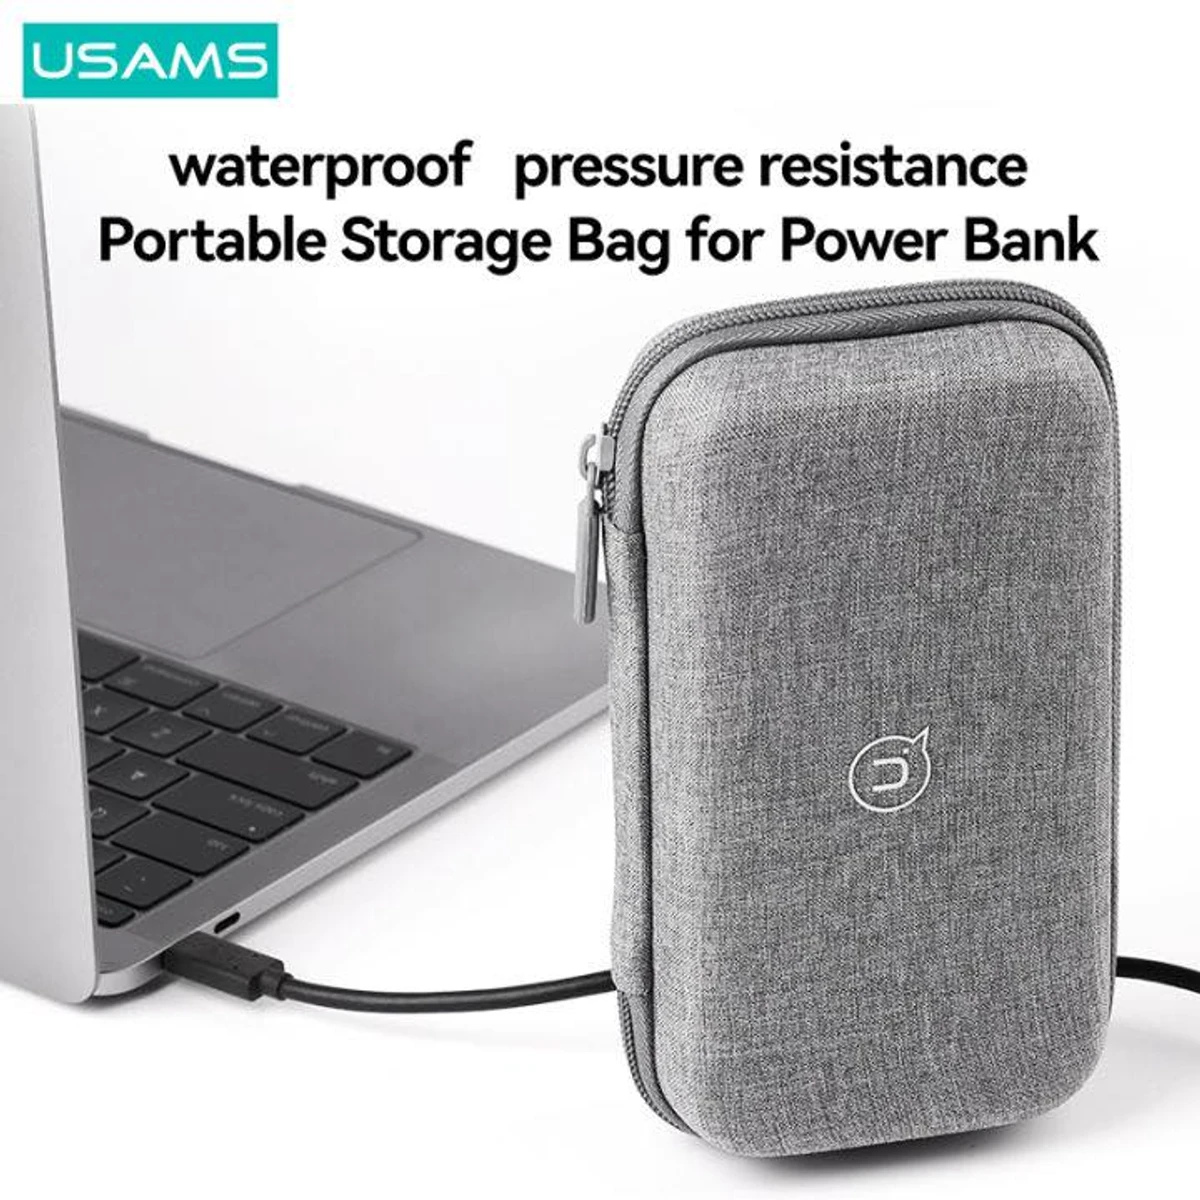 Water proof pressure Resistance Storage Bag